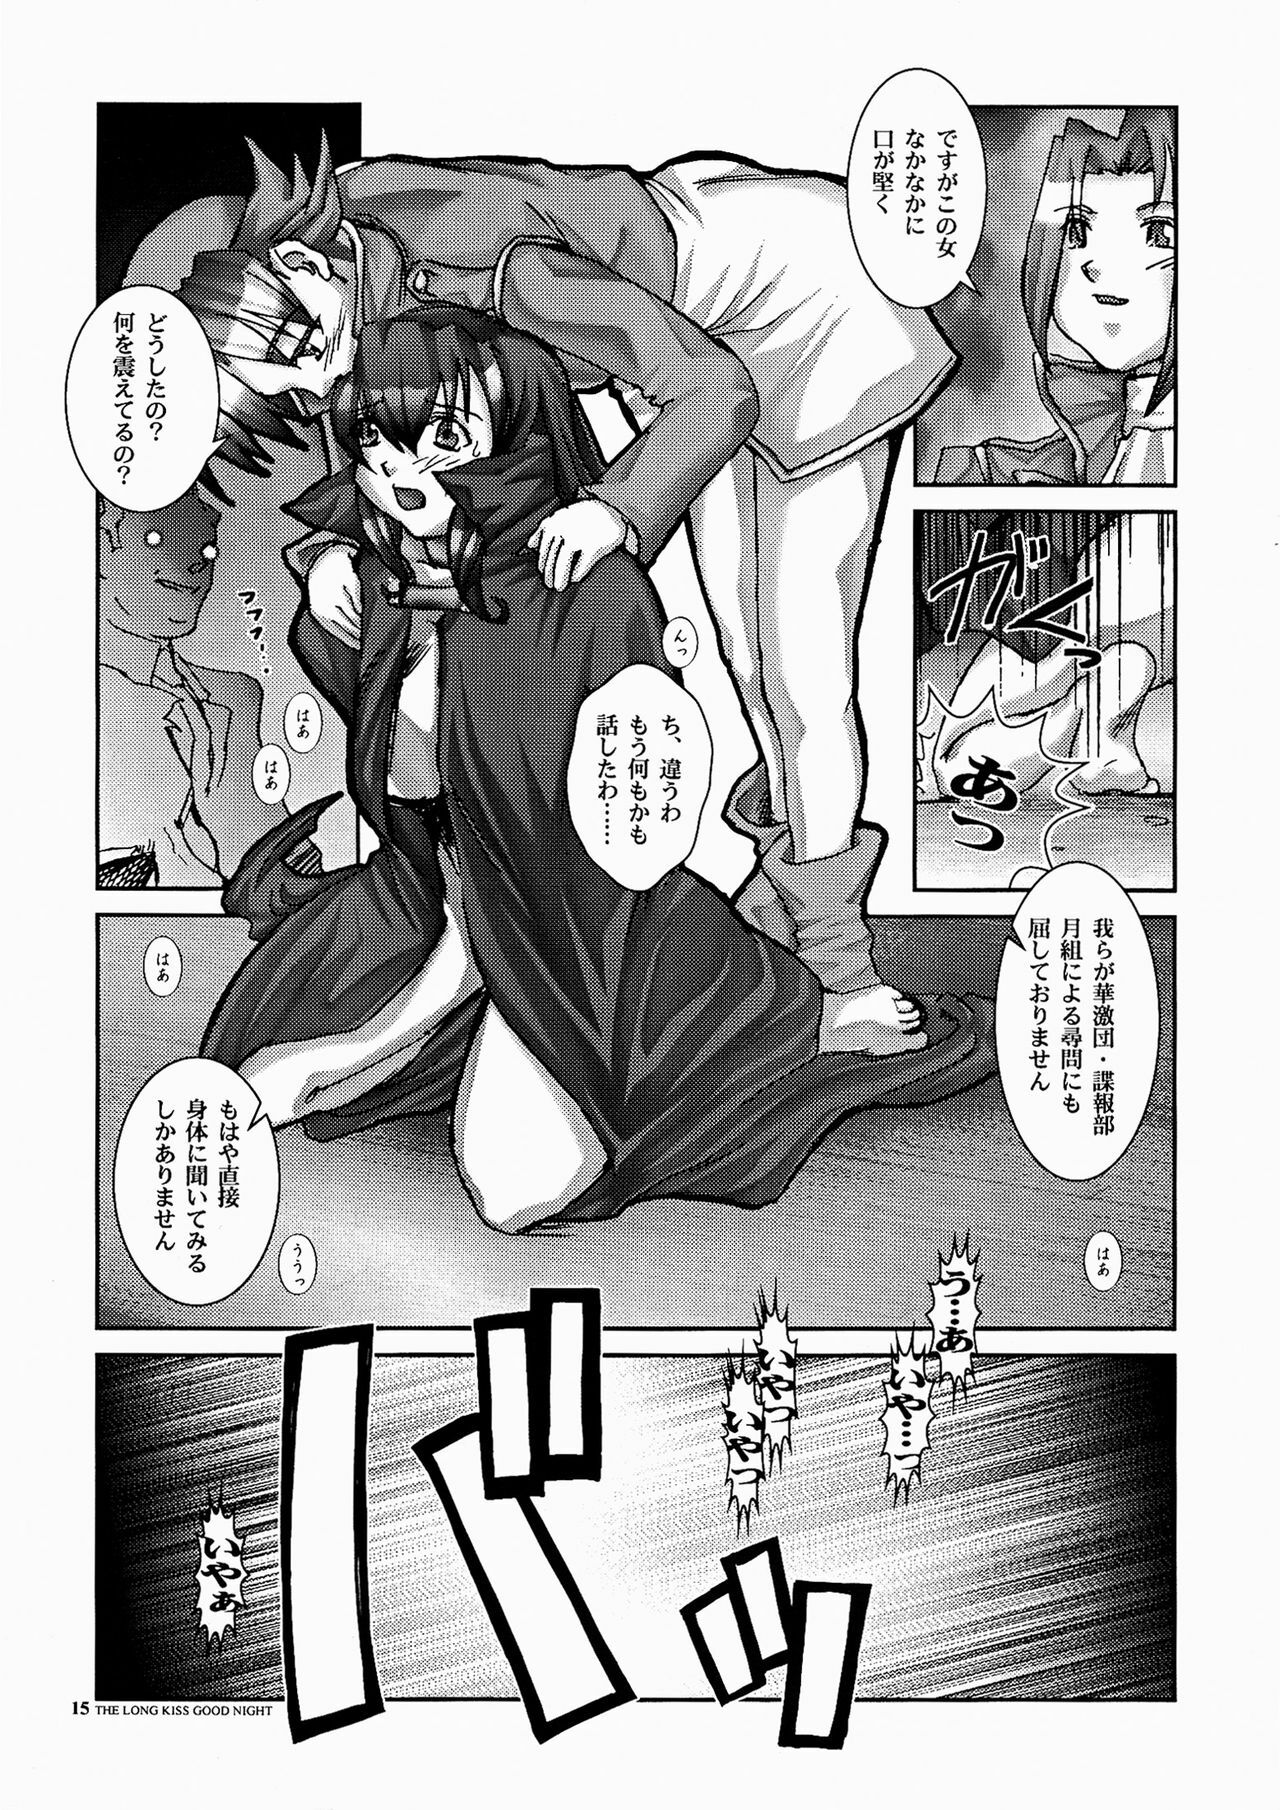 [HGH (HG Chagawa)] PLEATED GUNNER ZERO6 -The Long Kiss Good Night- (Sakura Taisen 2) page 15 full